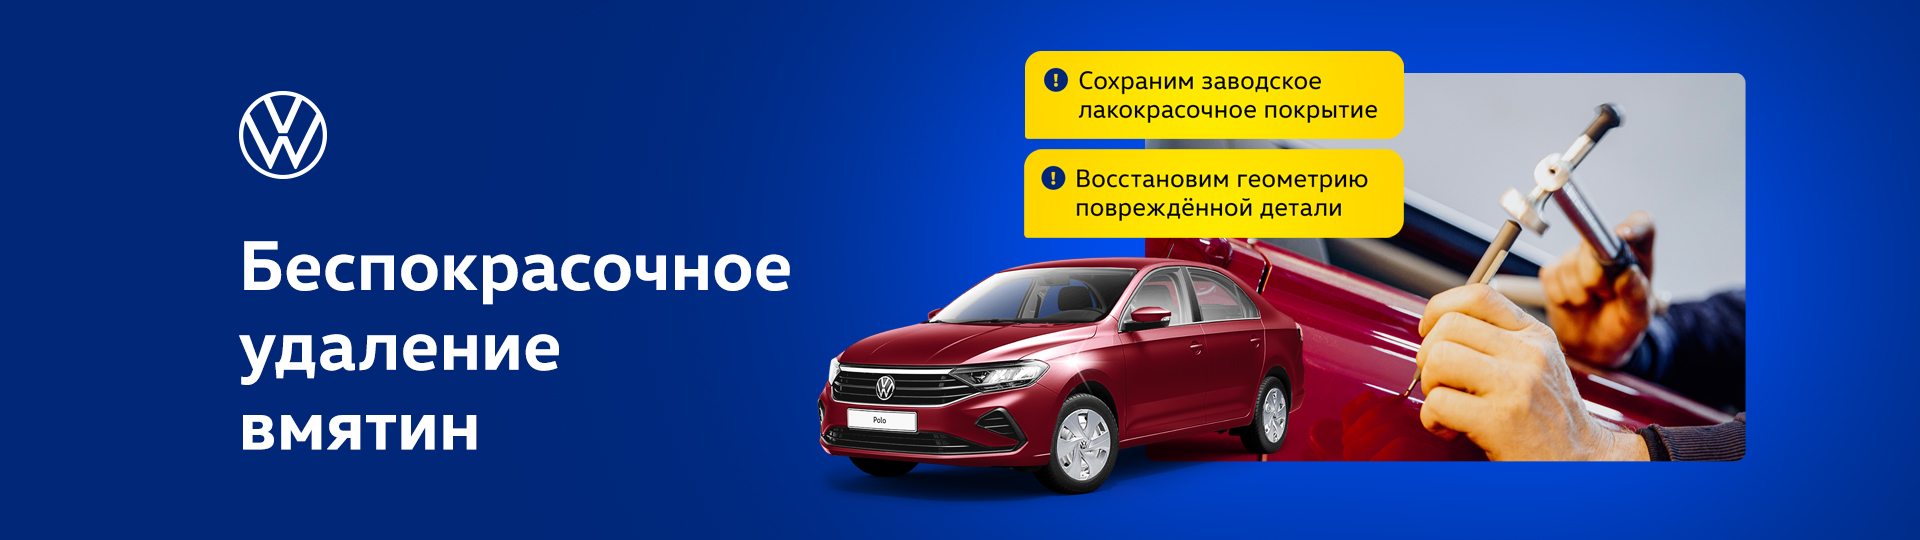 Беспокрасочное удаление вмятин в автосервисе Севастополя «Gala Motors»